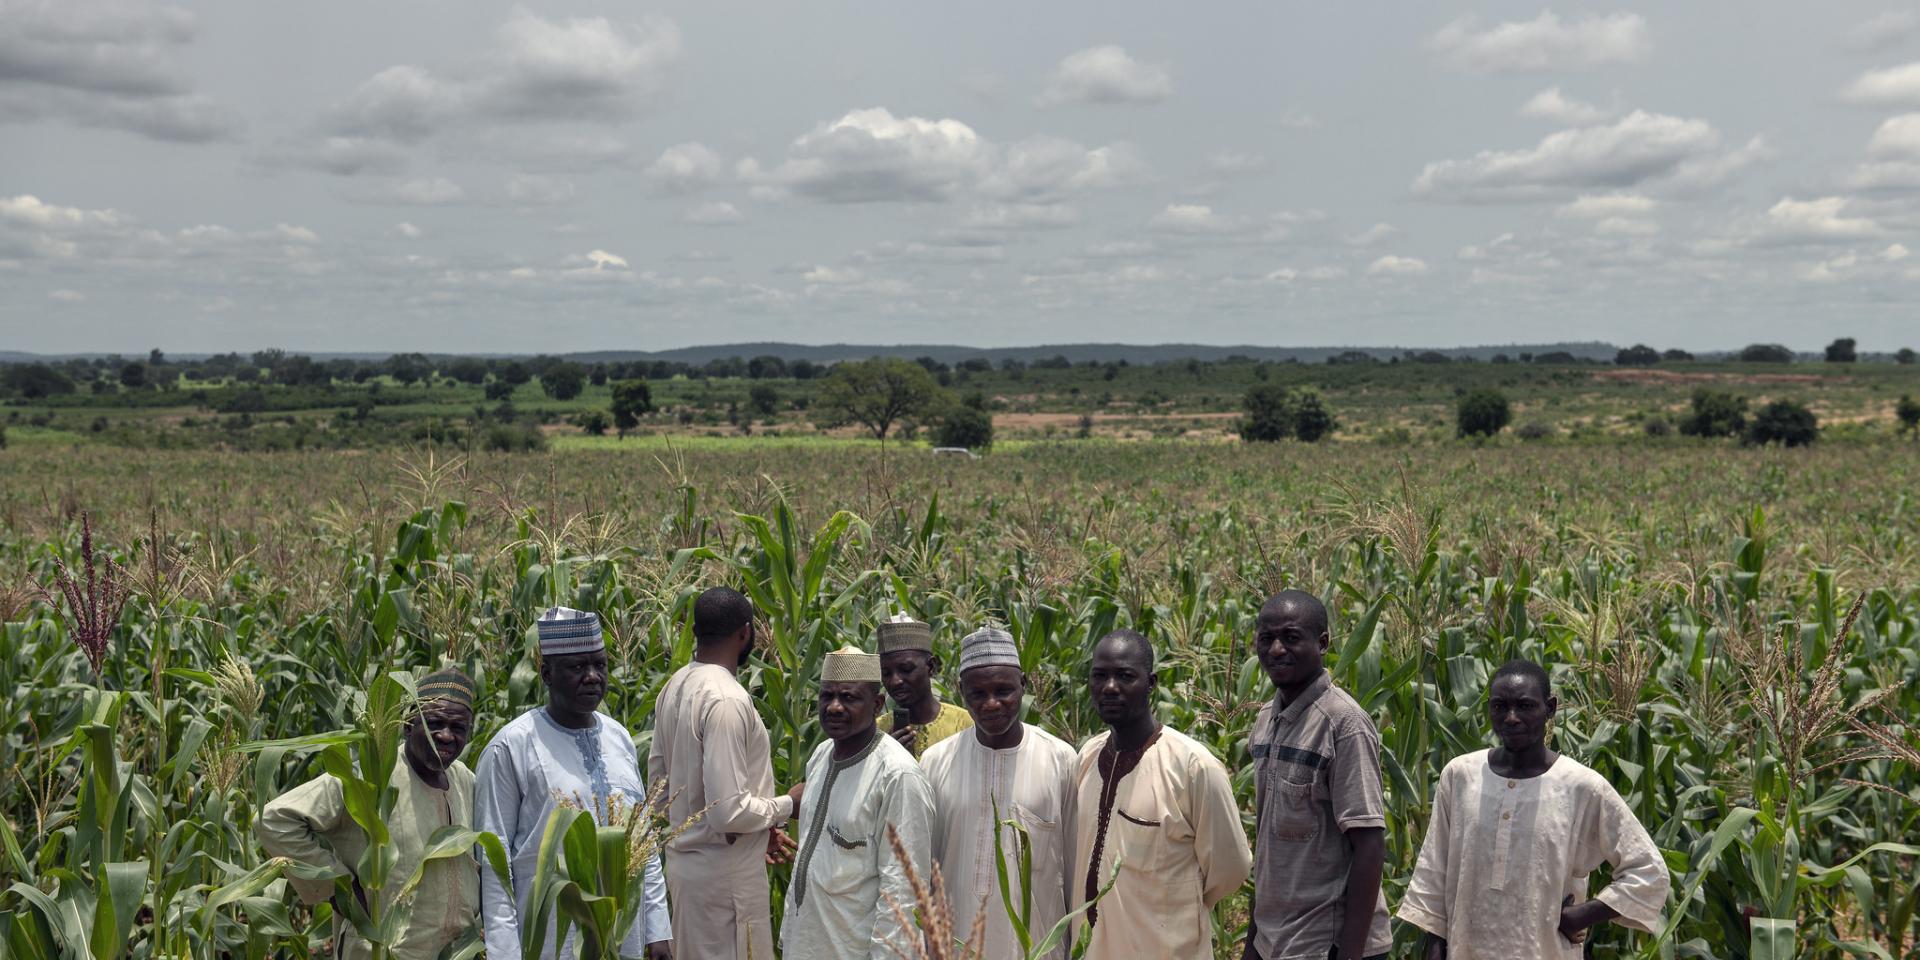 Men farmers in Maize field in Nigeria